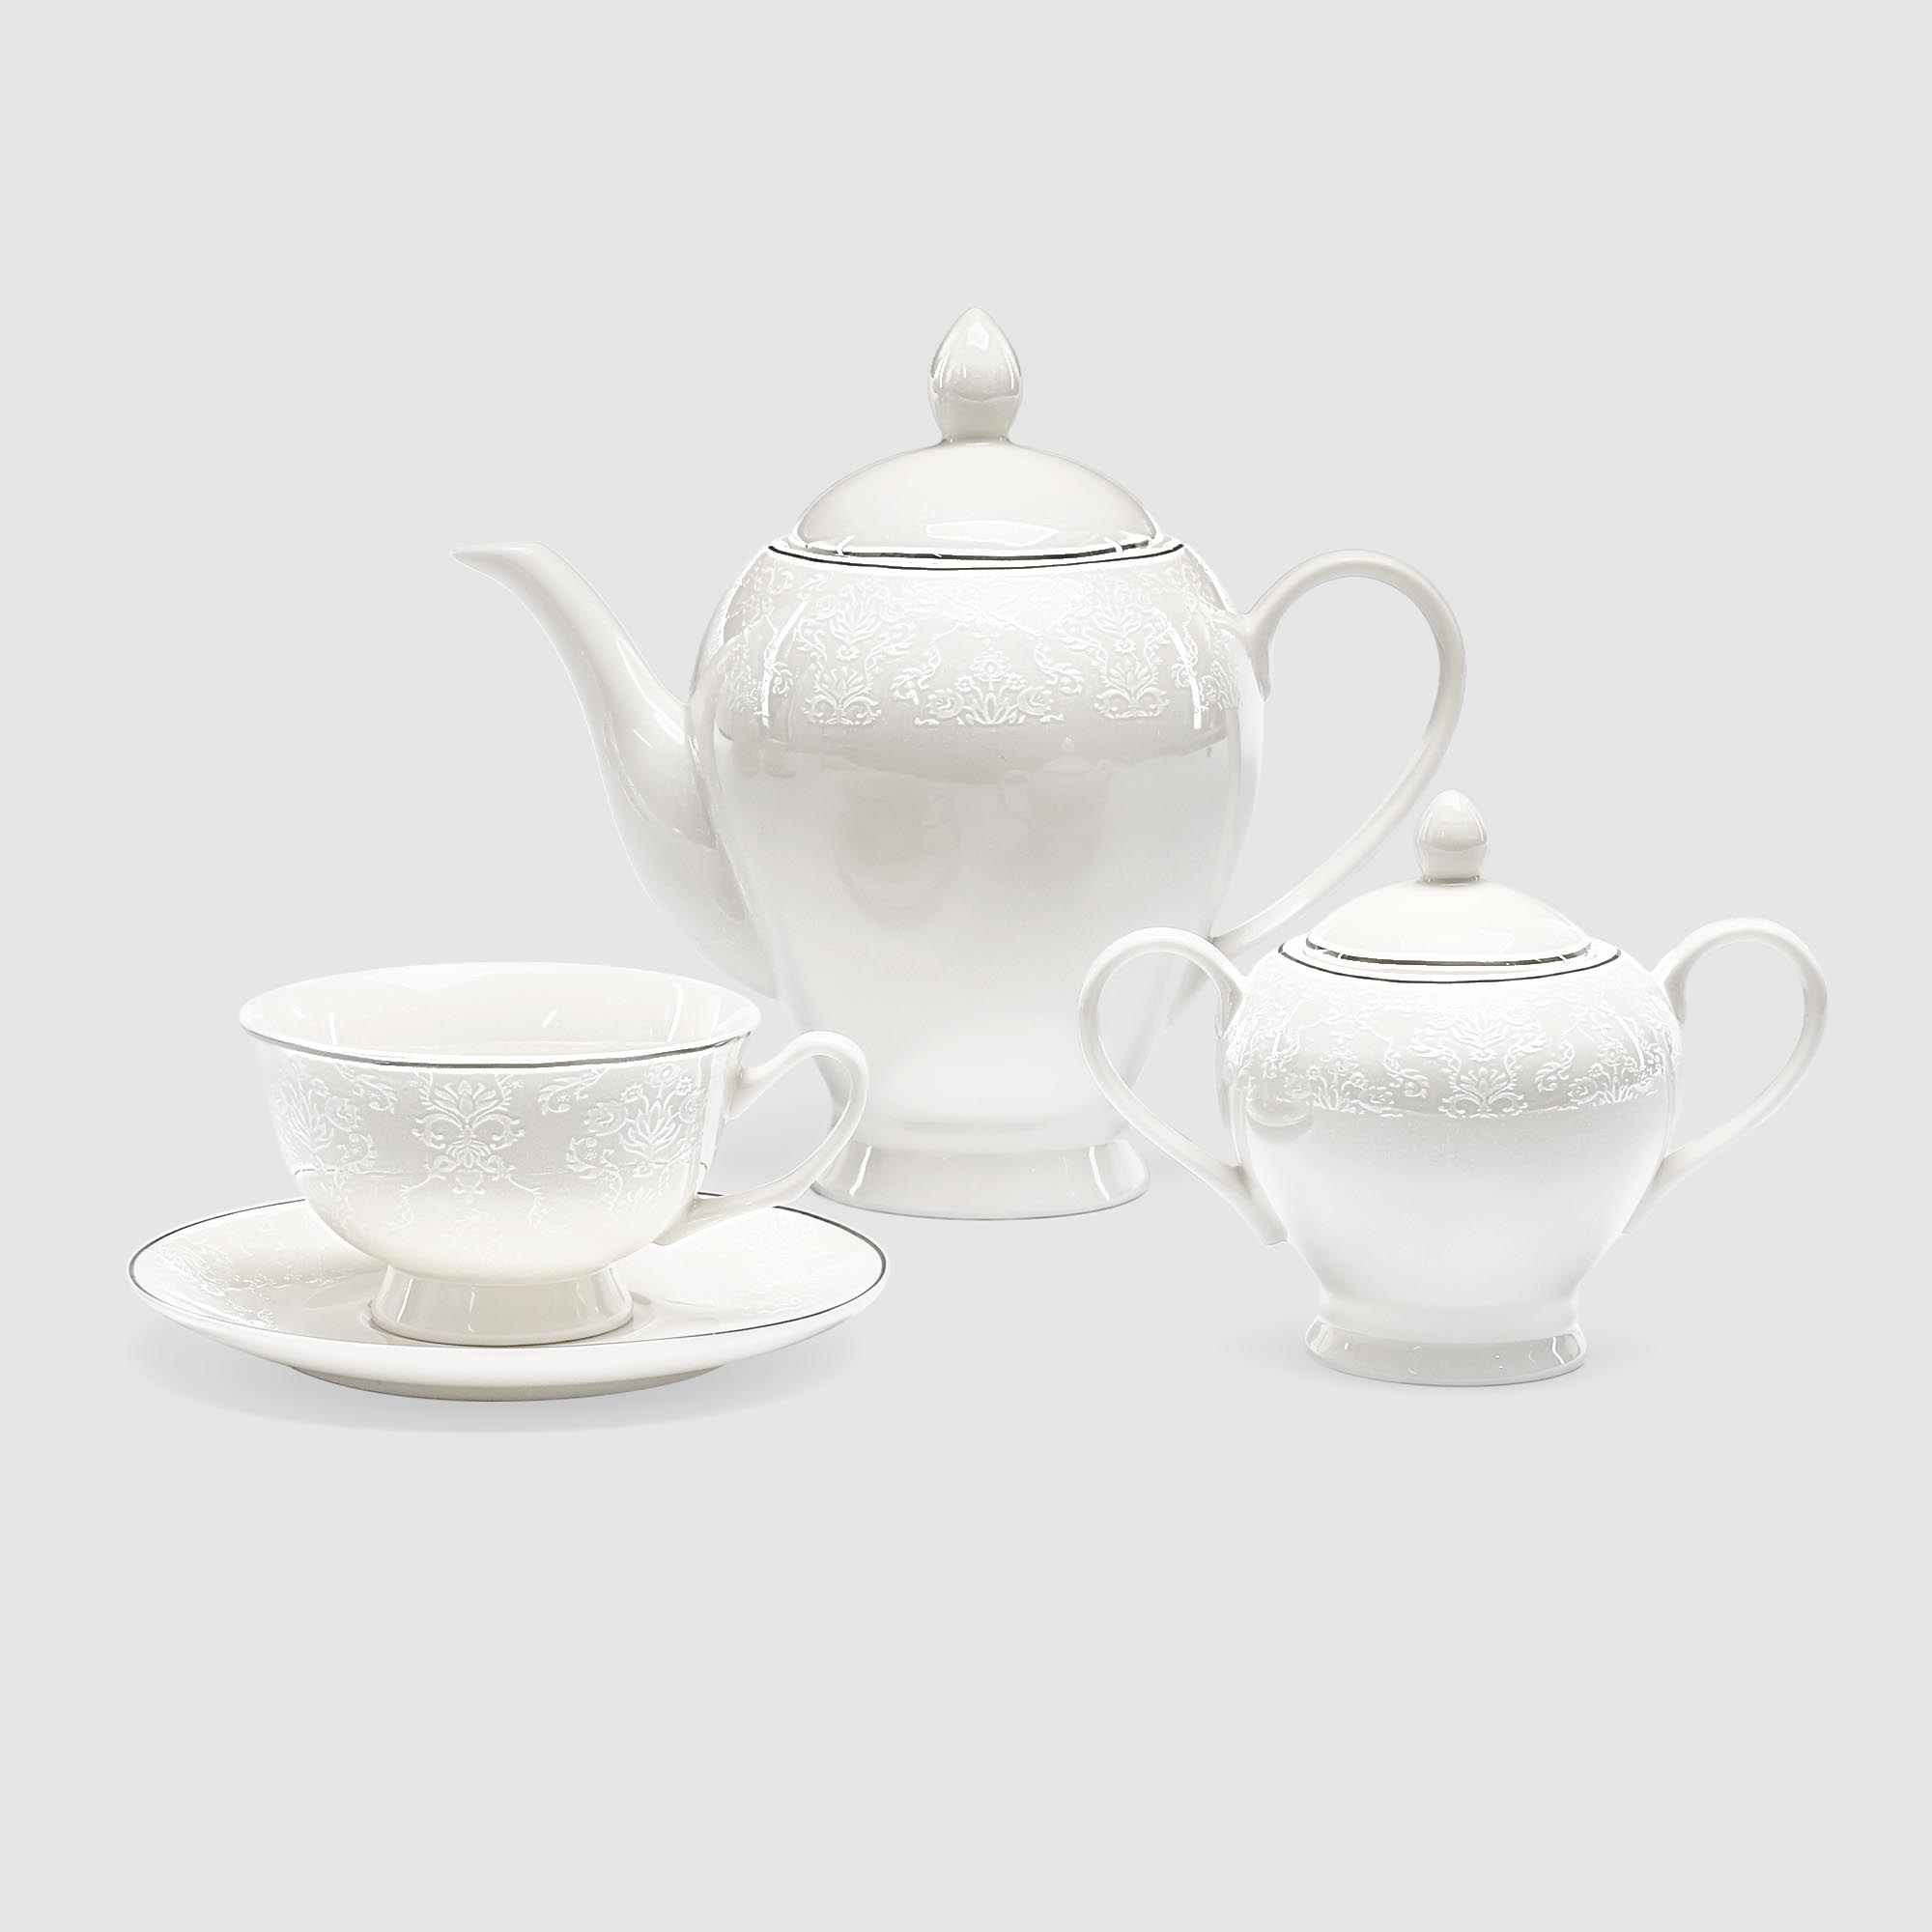 чайный сервиз из 8 предметов на 4 персоны lefard grace 230 мл Сервиз чайный French garden Grace 14 предметов 6 персон